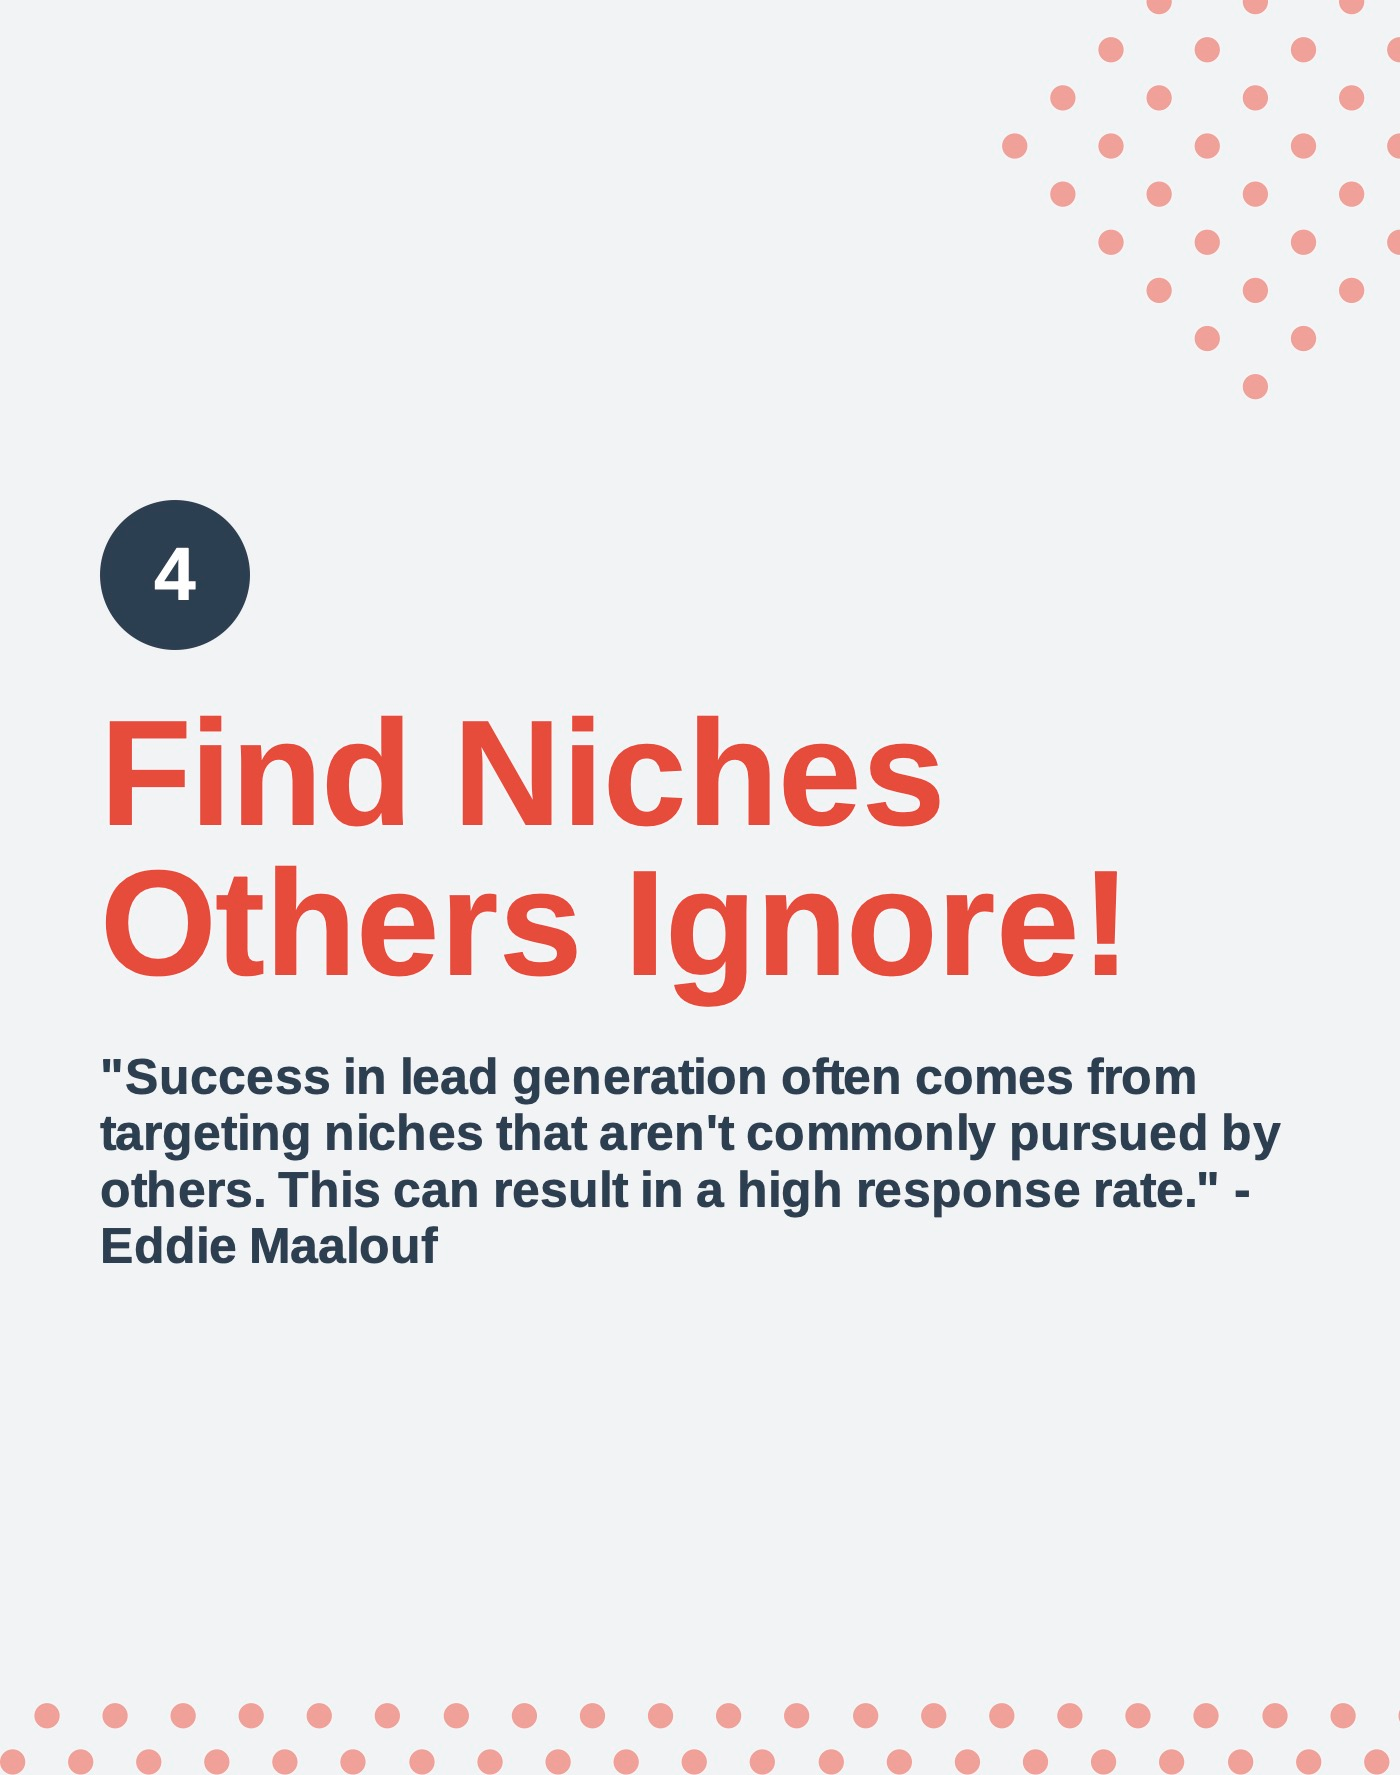 Find untapped niches - Eddie Maalouf